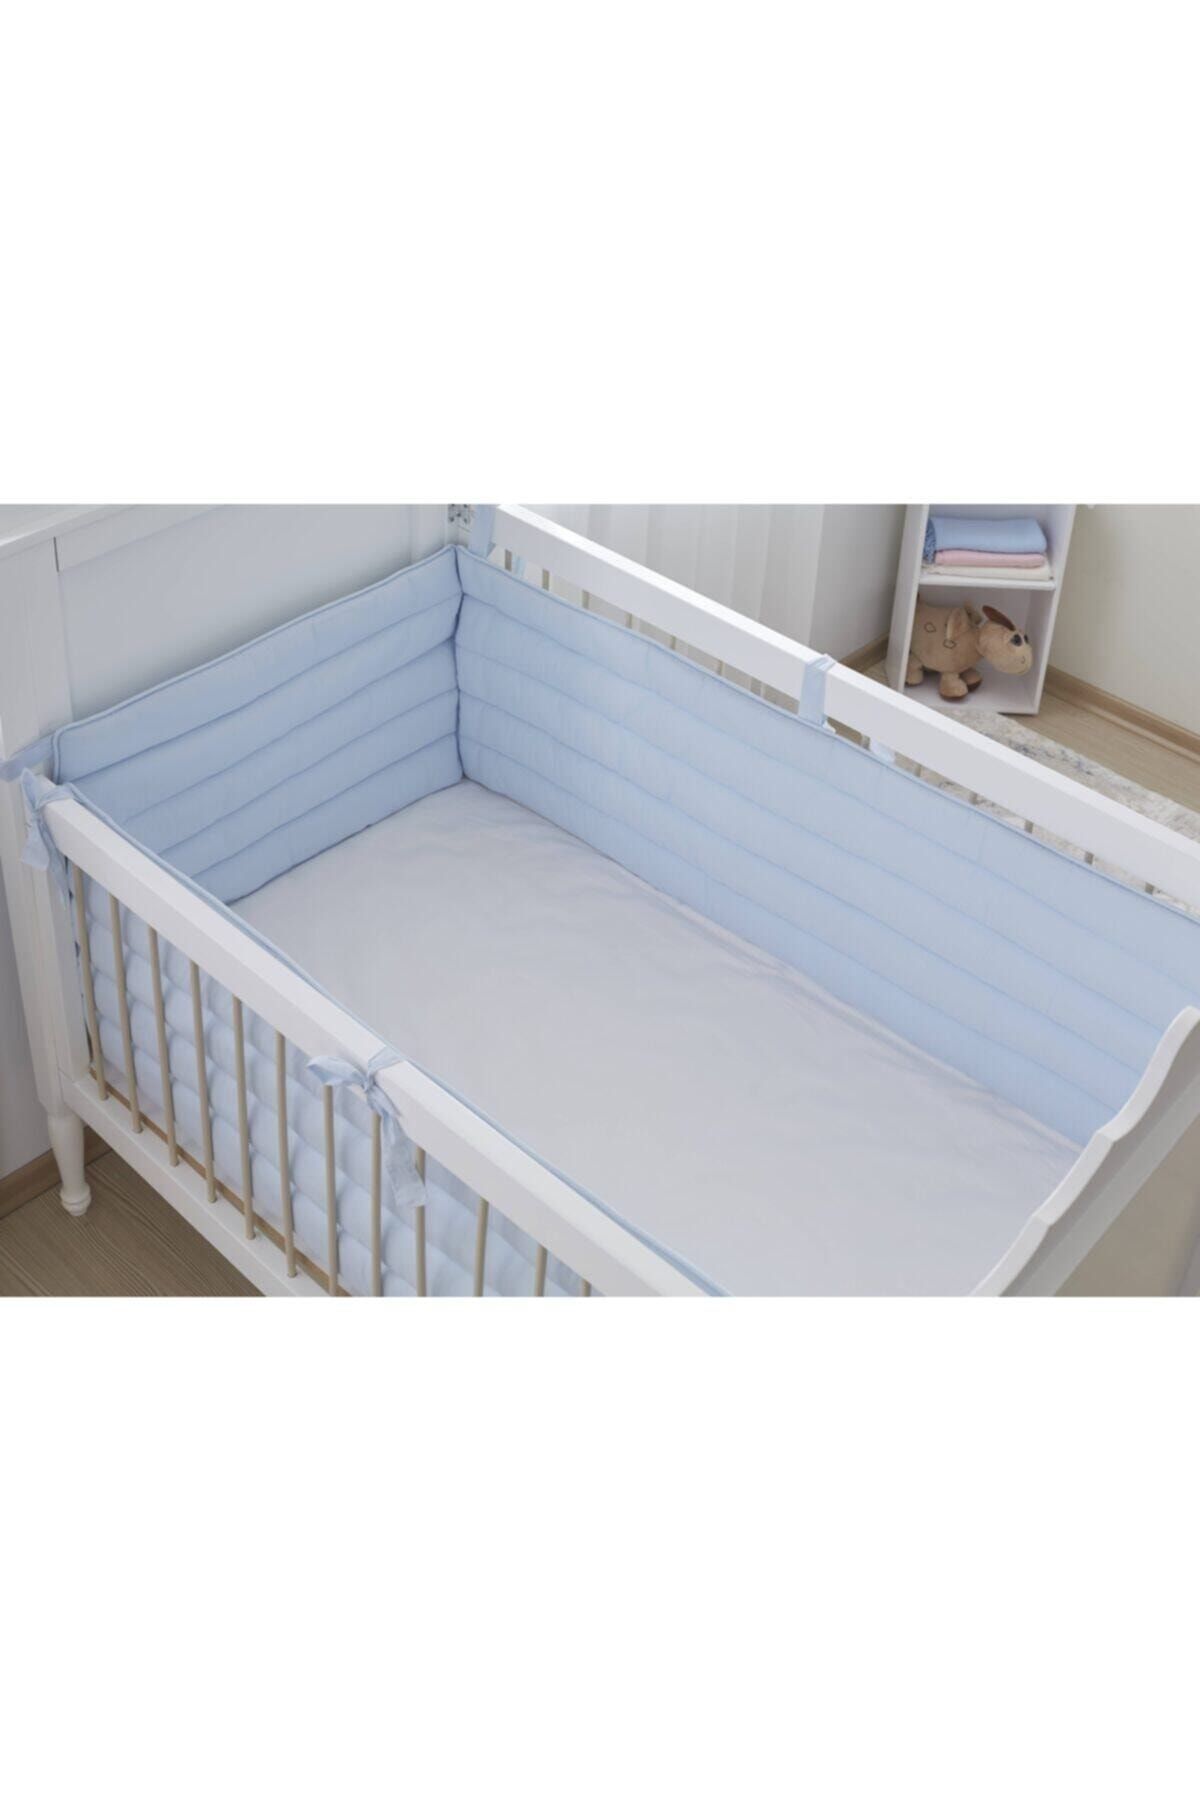 Aybi Baby Beşik Kenar Koruyucu Set 3 Parça - Mavi - 80x140 cm